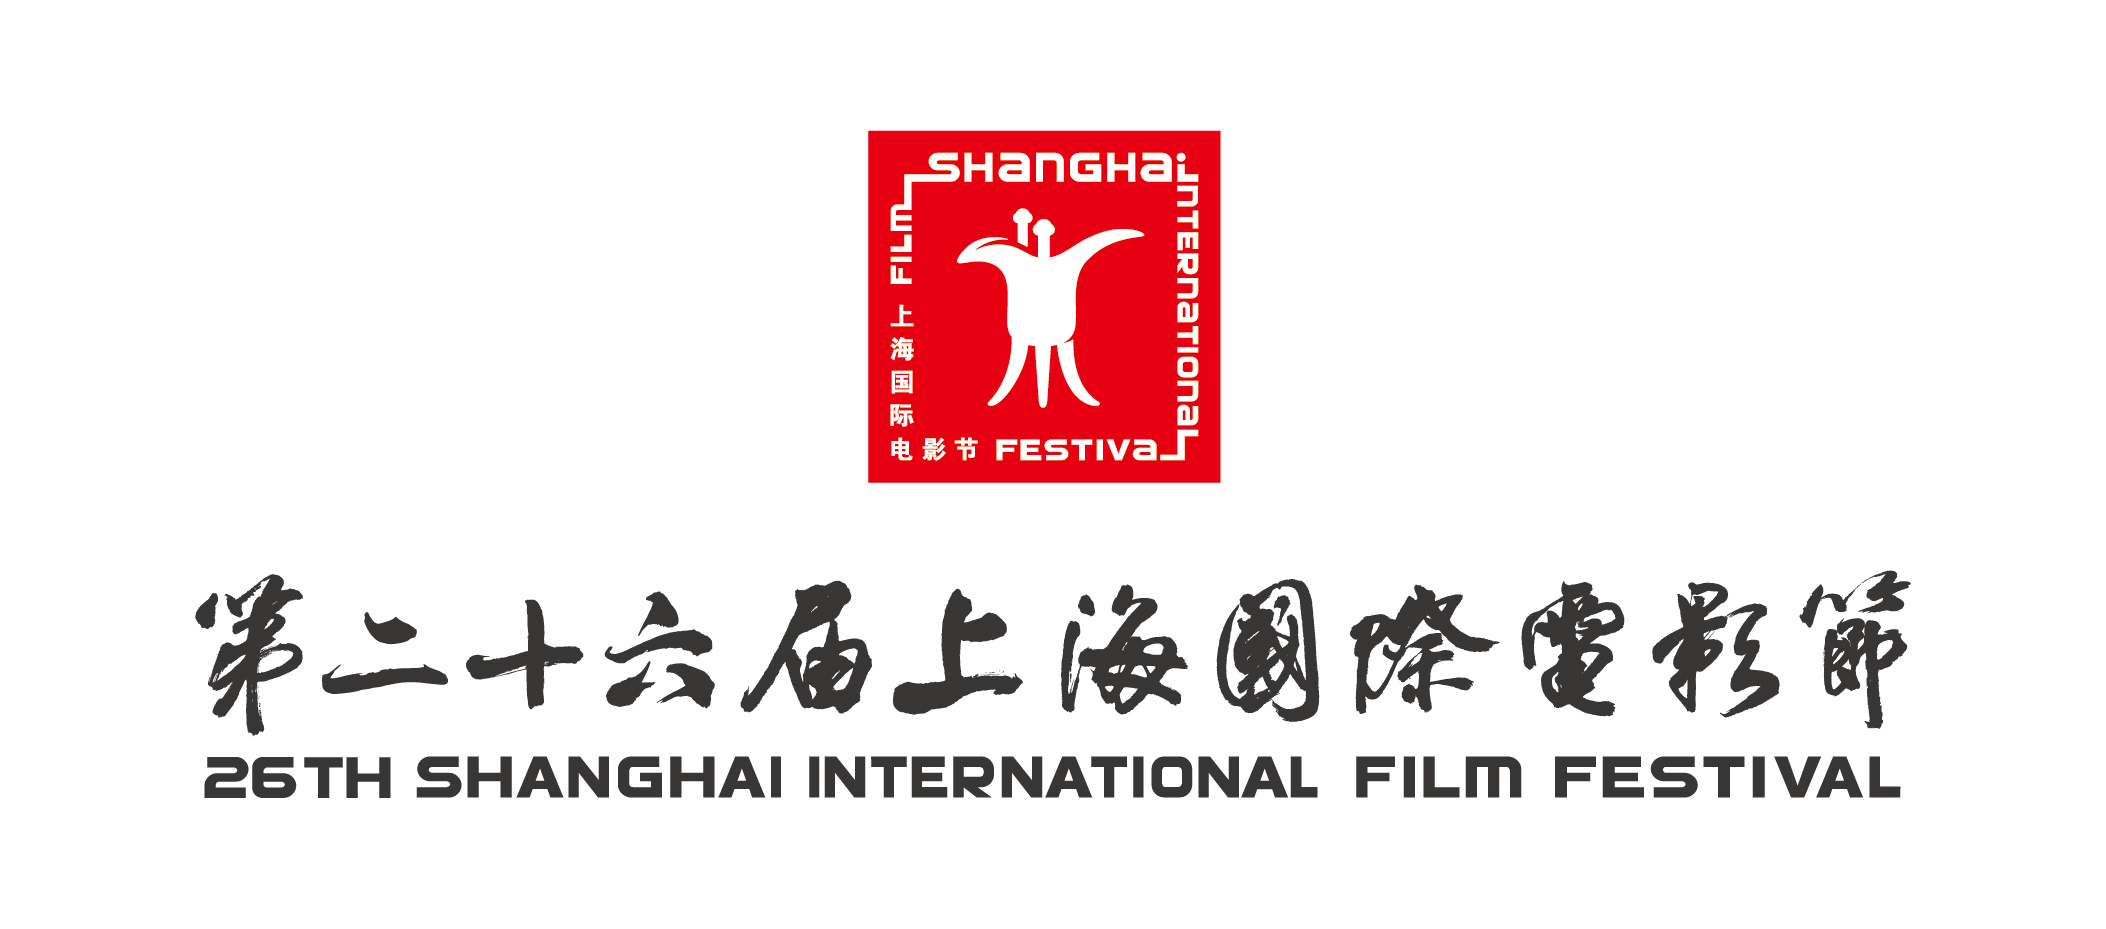 第26届上海国际电影节将于6月14日至23日举办